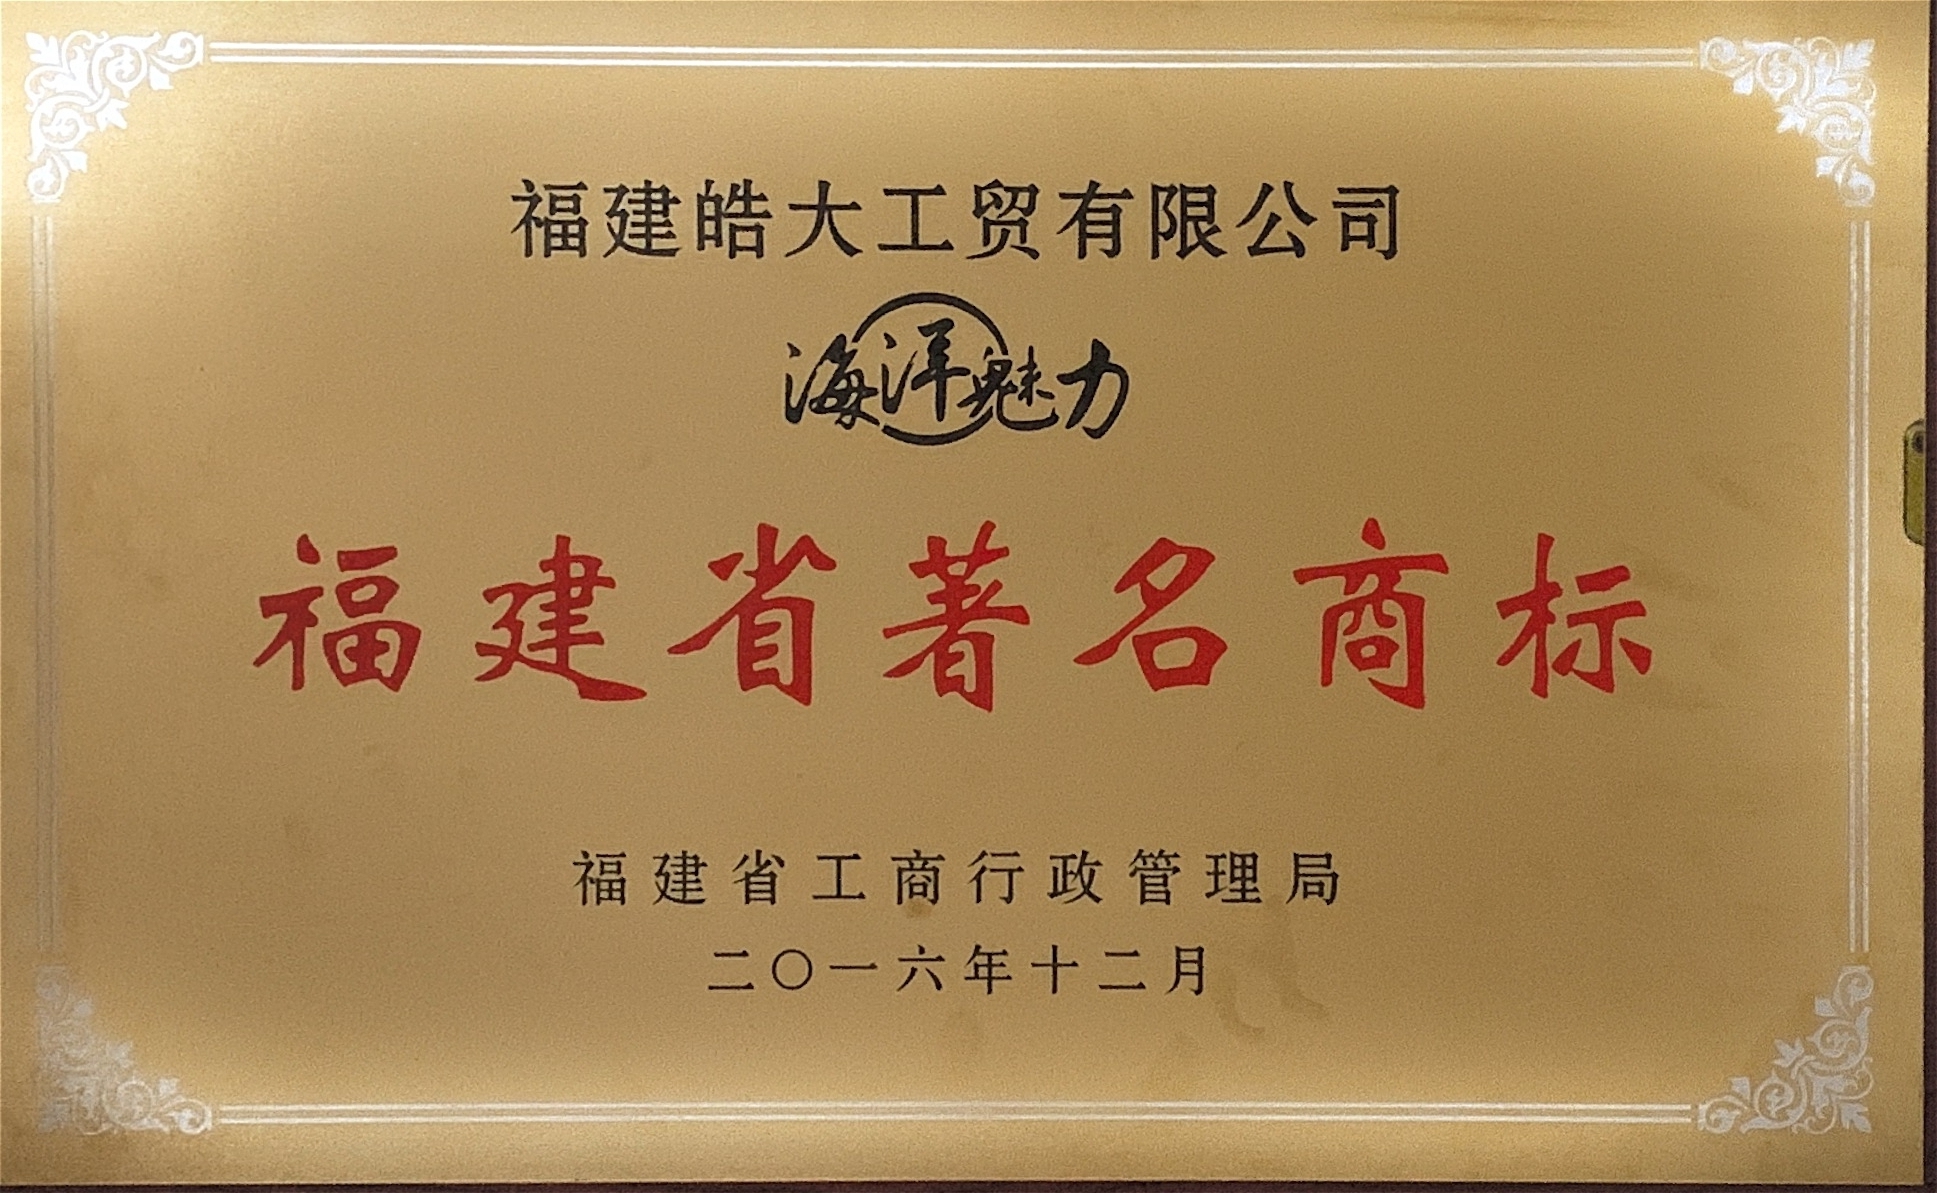 2016福建省著名商标